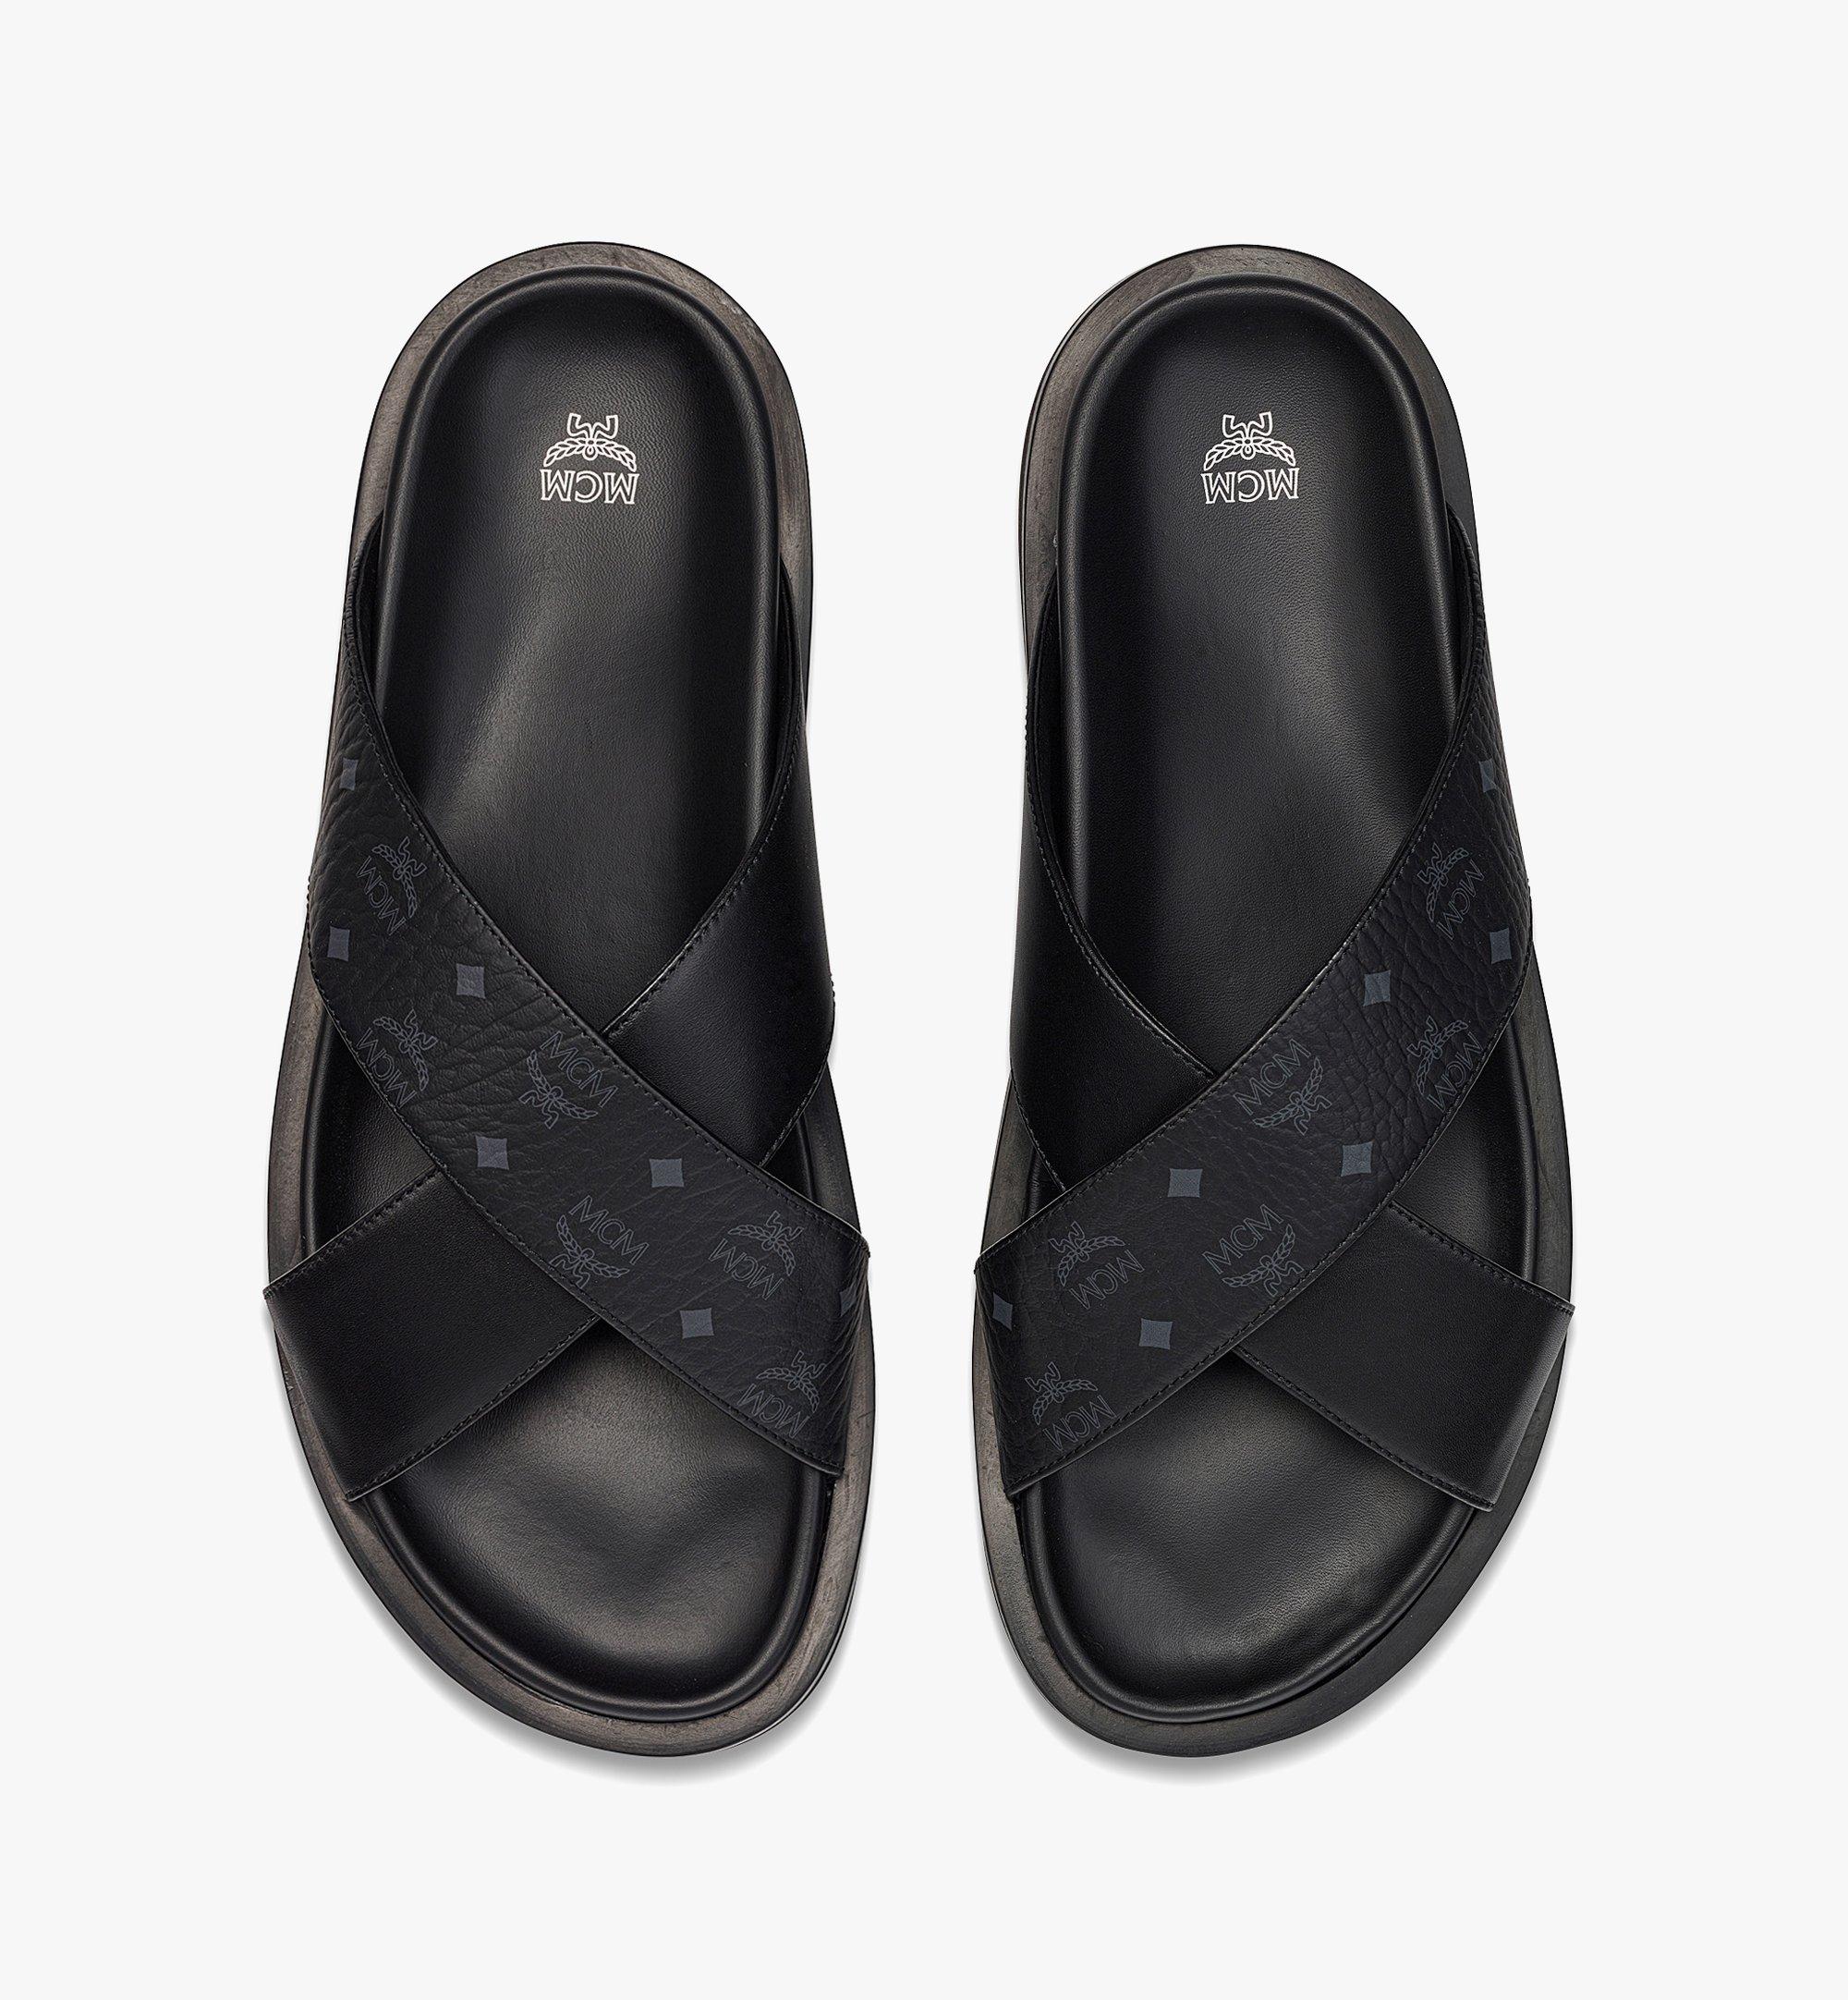 47 IT Sandals in Visetos Leather Mix Black | MCM ®US